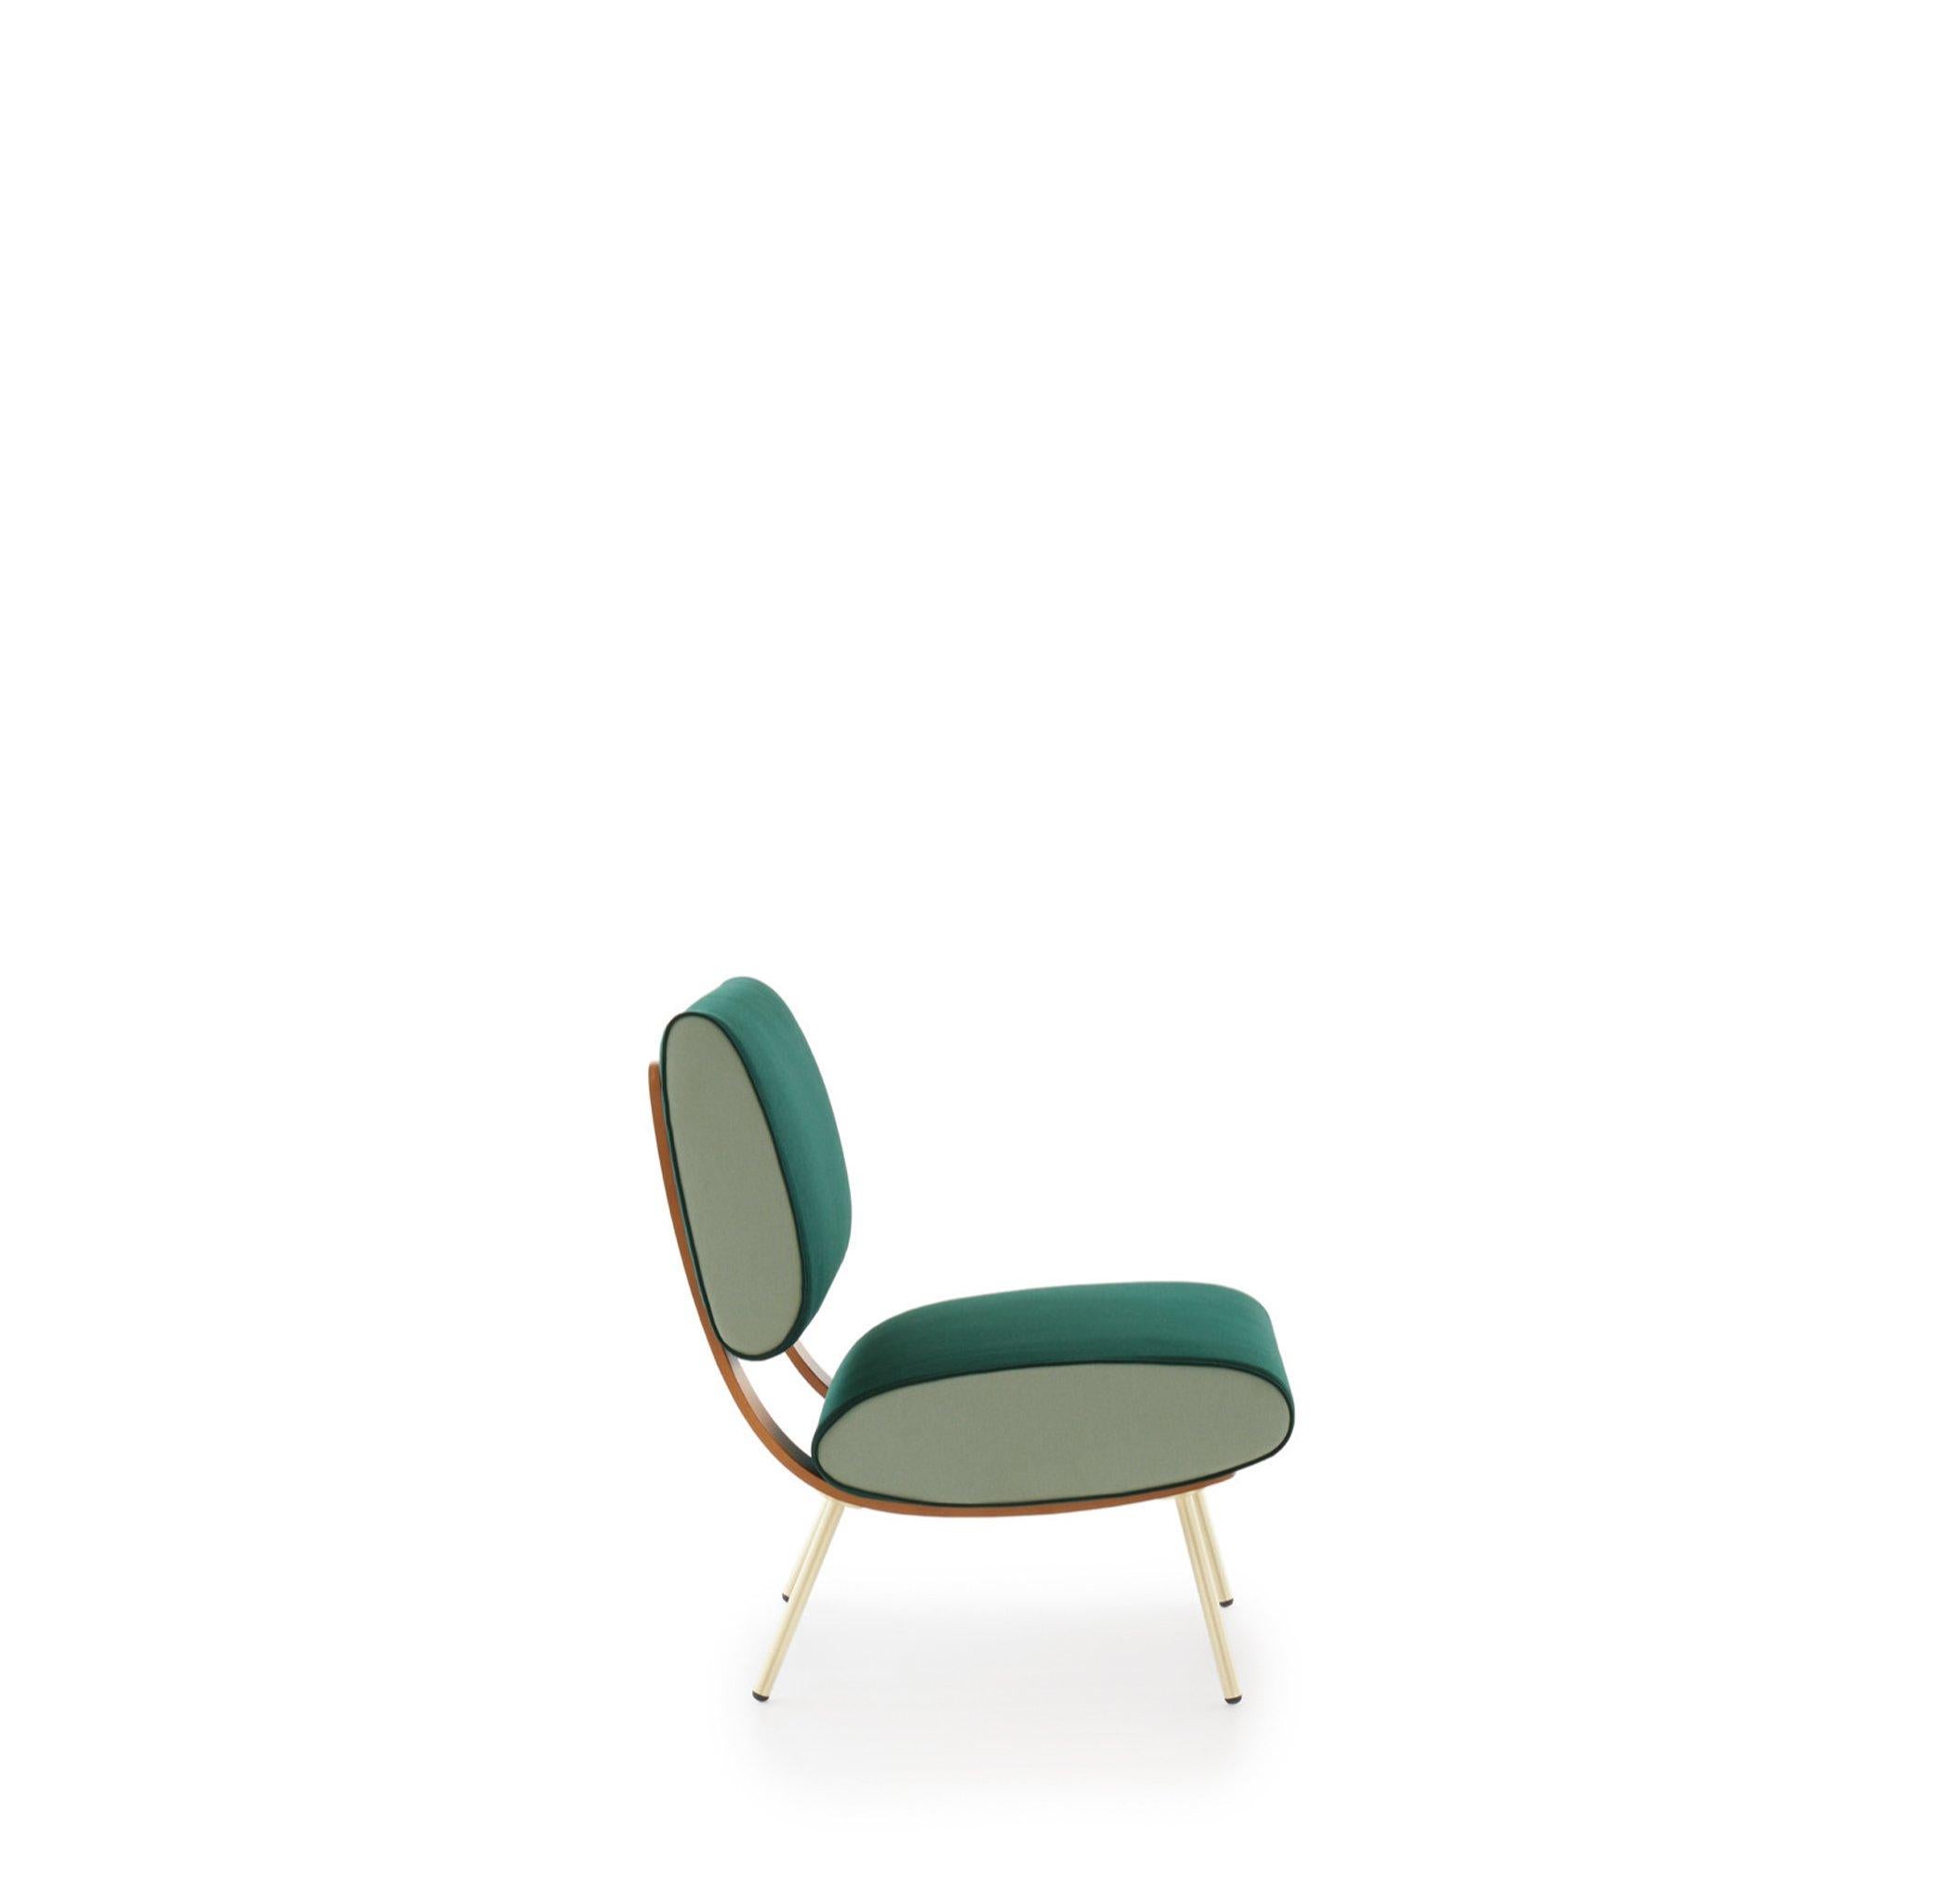 Sessel aus Leder von Gio Ponti. Fachmännisch hergestellt in Italien, exklusiv von Molteni&C.

Das Ende des Zweiten Weltkriegs läutete eine Ära der Kreativität ein, und das war auch beim Möbeldesign nicht anders. Dieser runde Stuhl erinnert an das